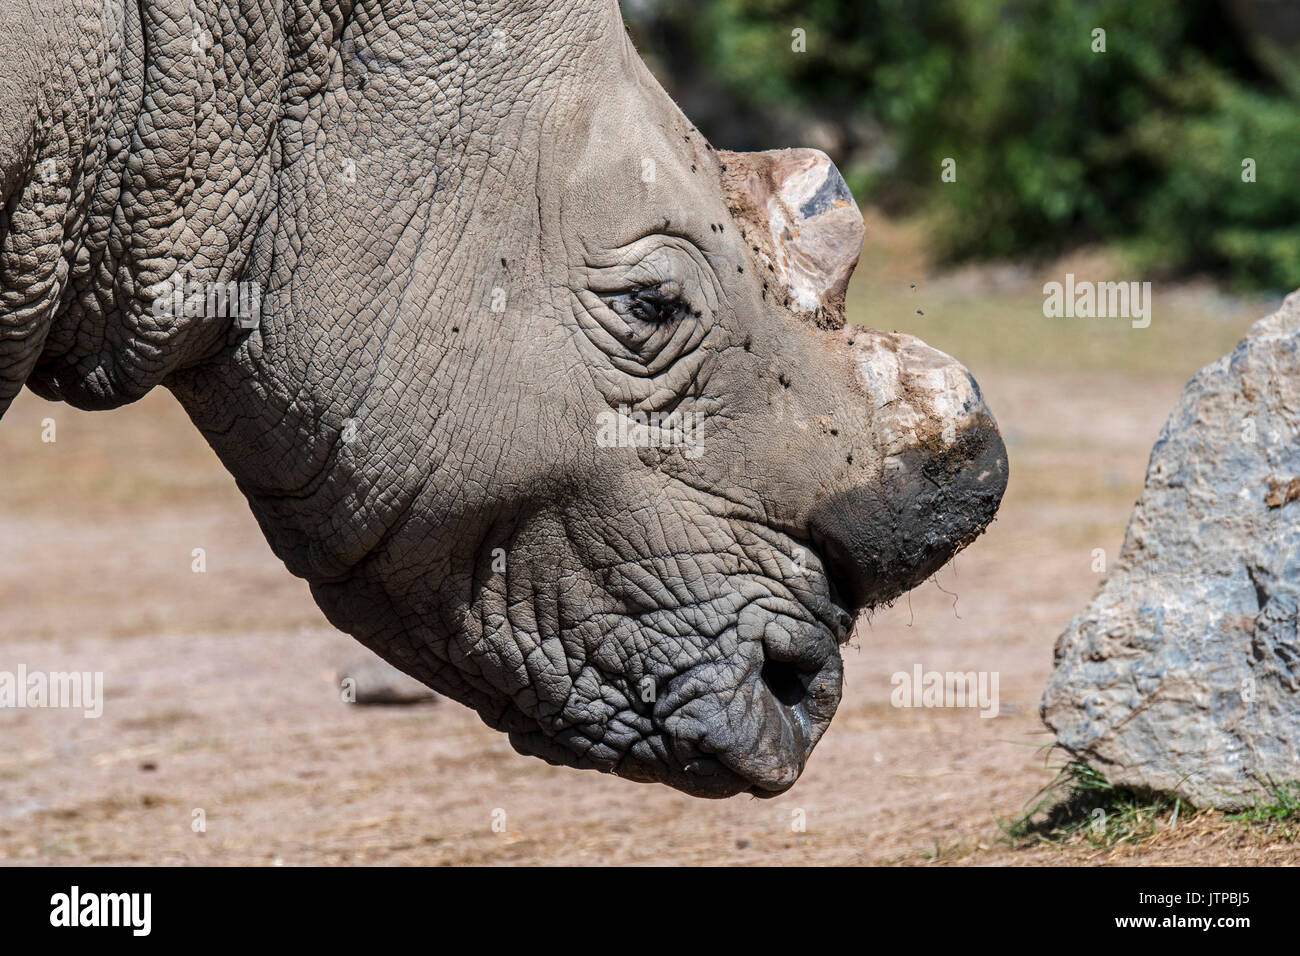 Cerca de rinoceronte blanco / rinoceronte blanco (Ceratotherium simum) con corte cuernos como precaución contra el robo de cazadores furtivos Foto de stock